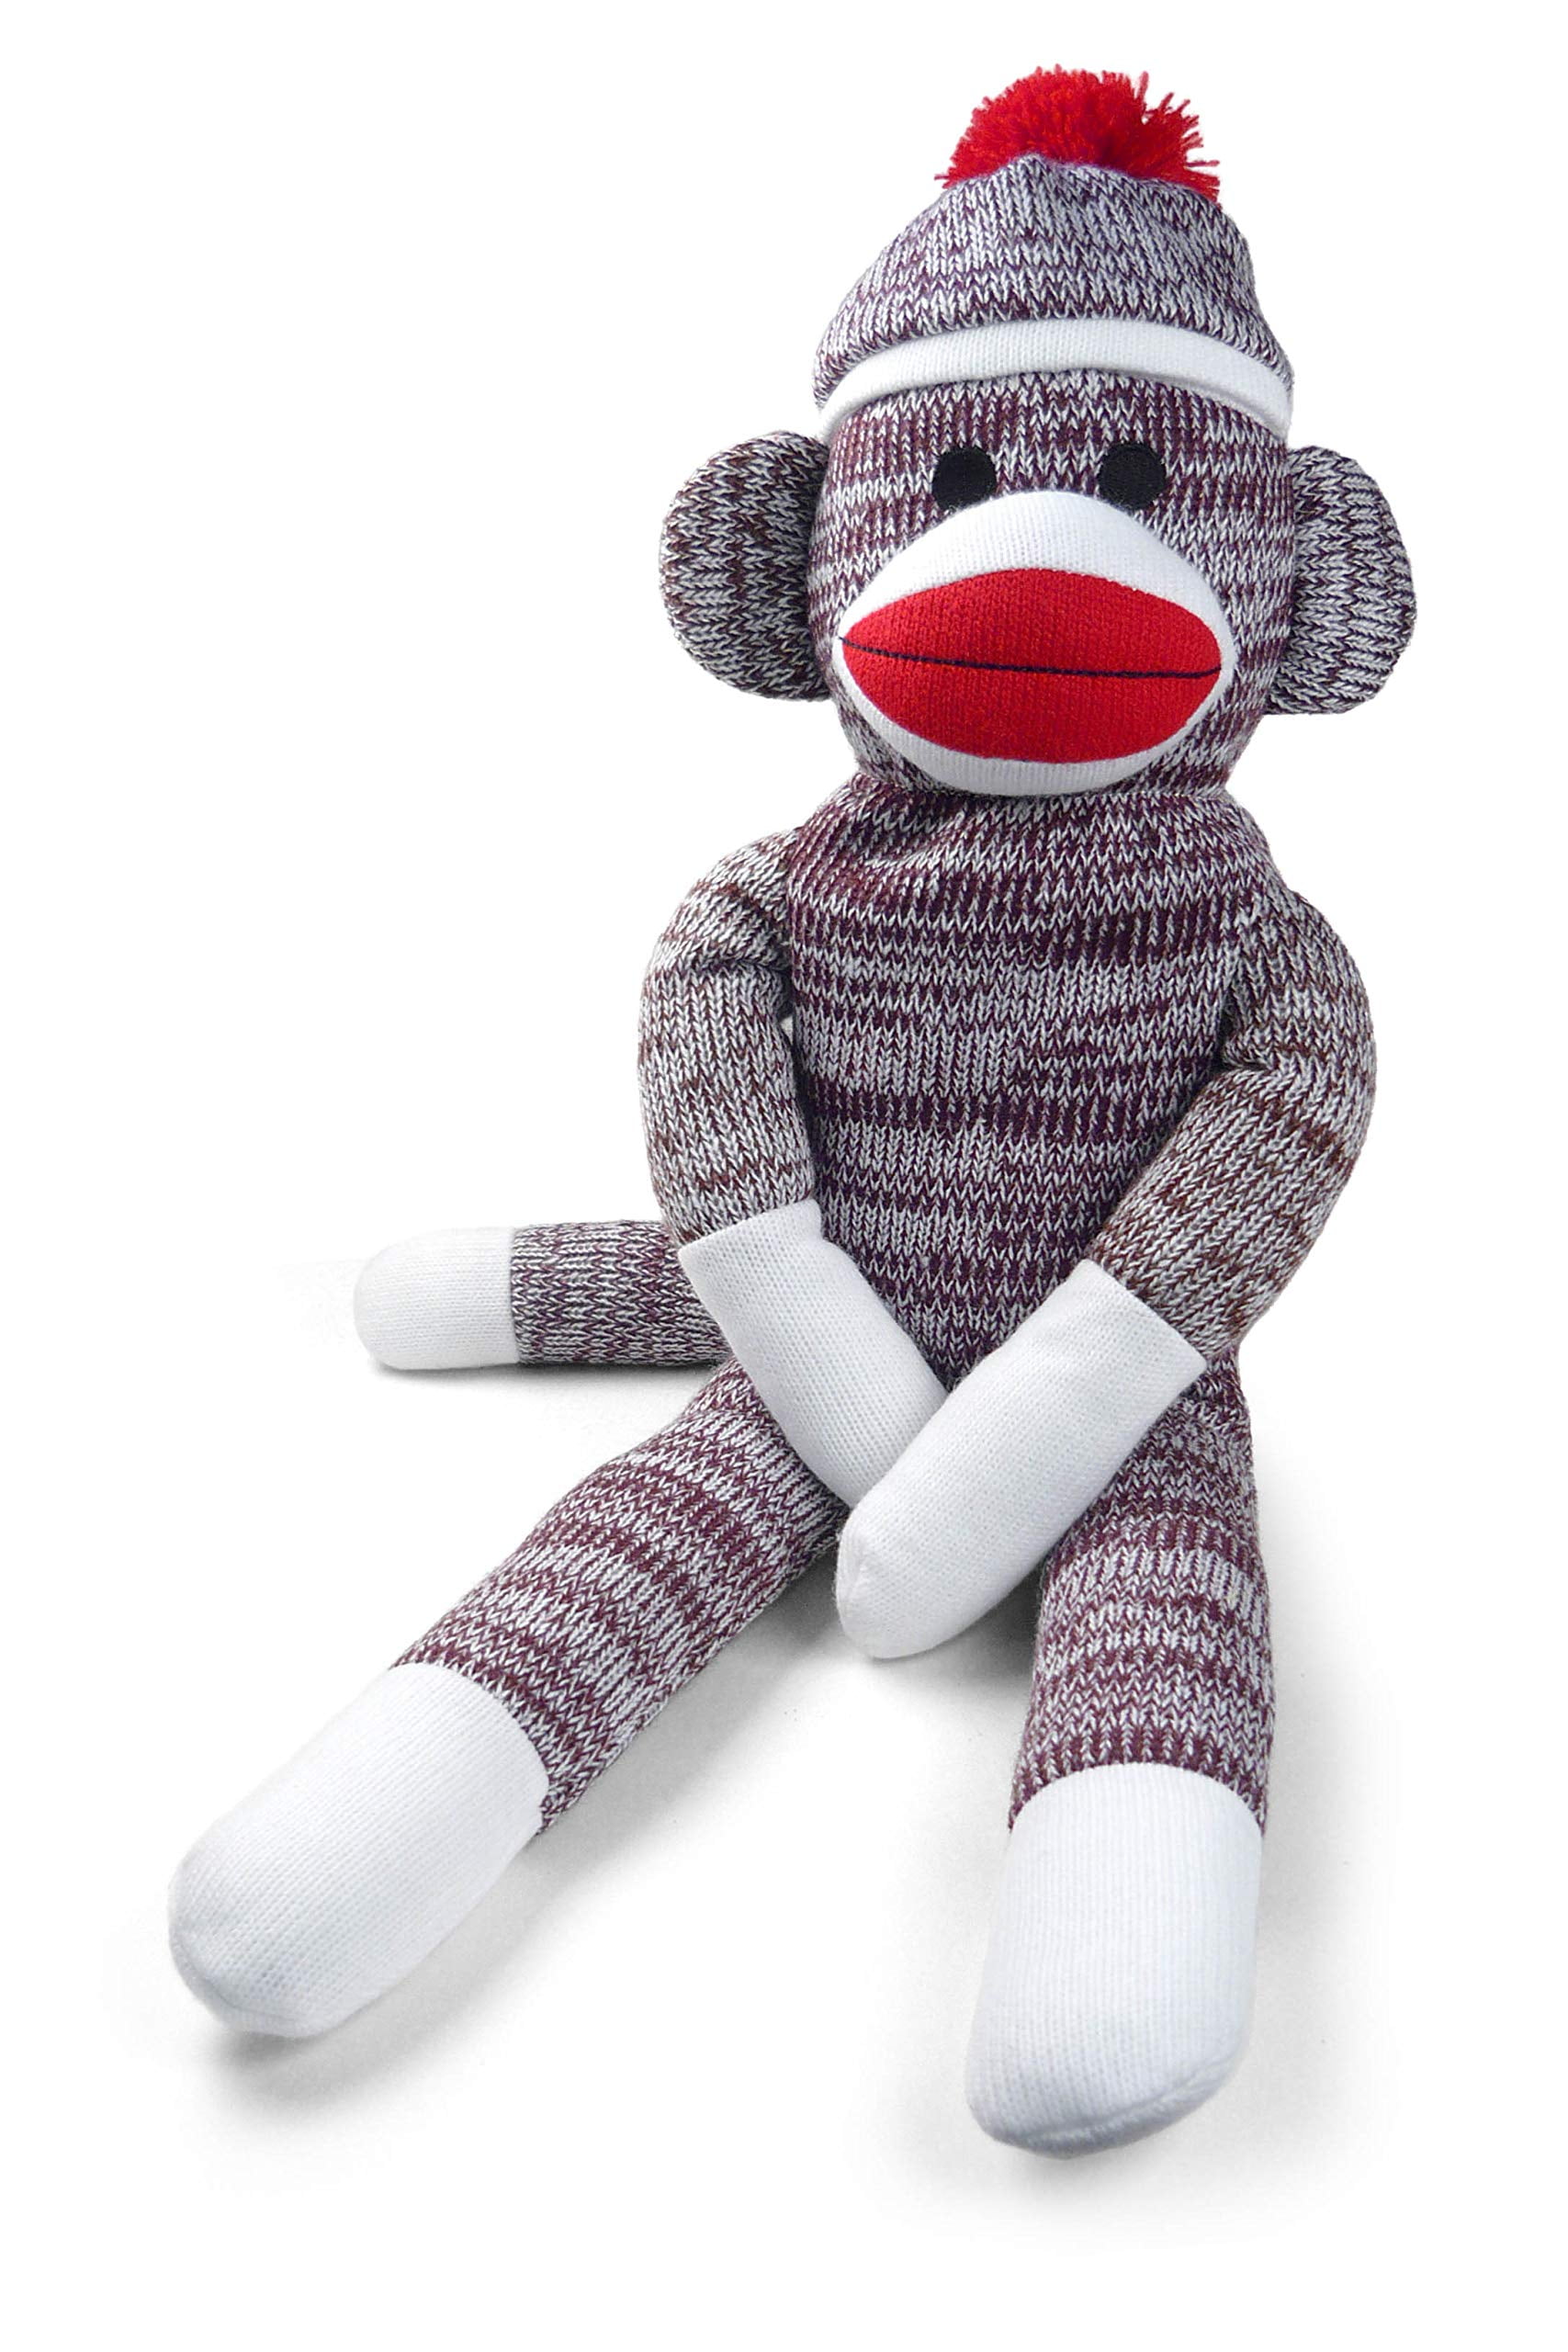 Schyilling Sock Monkey 23145 